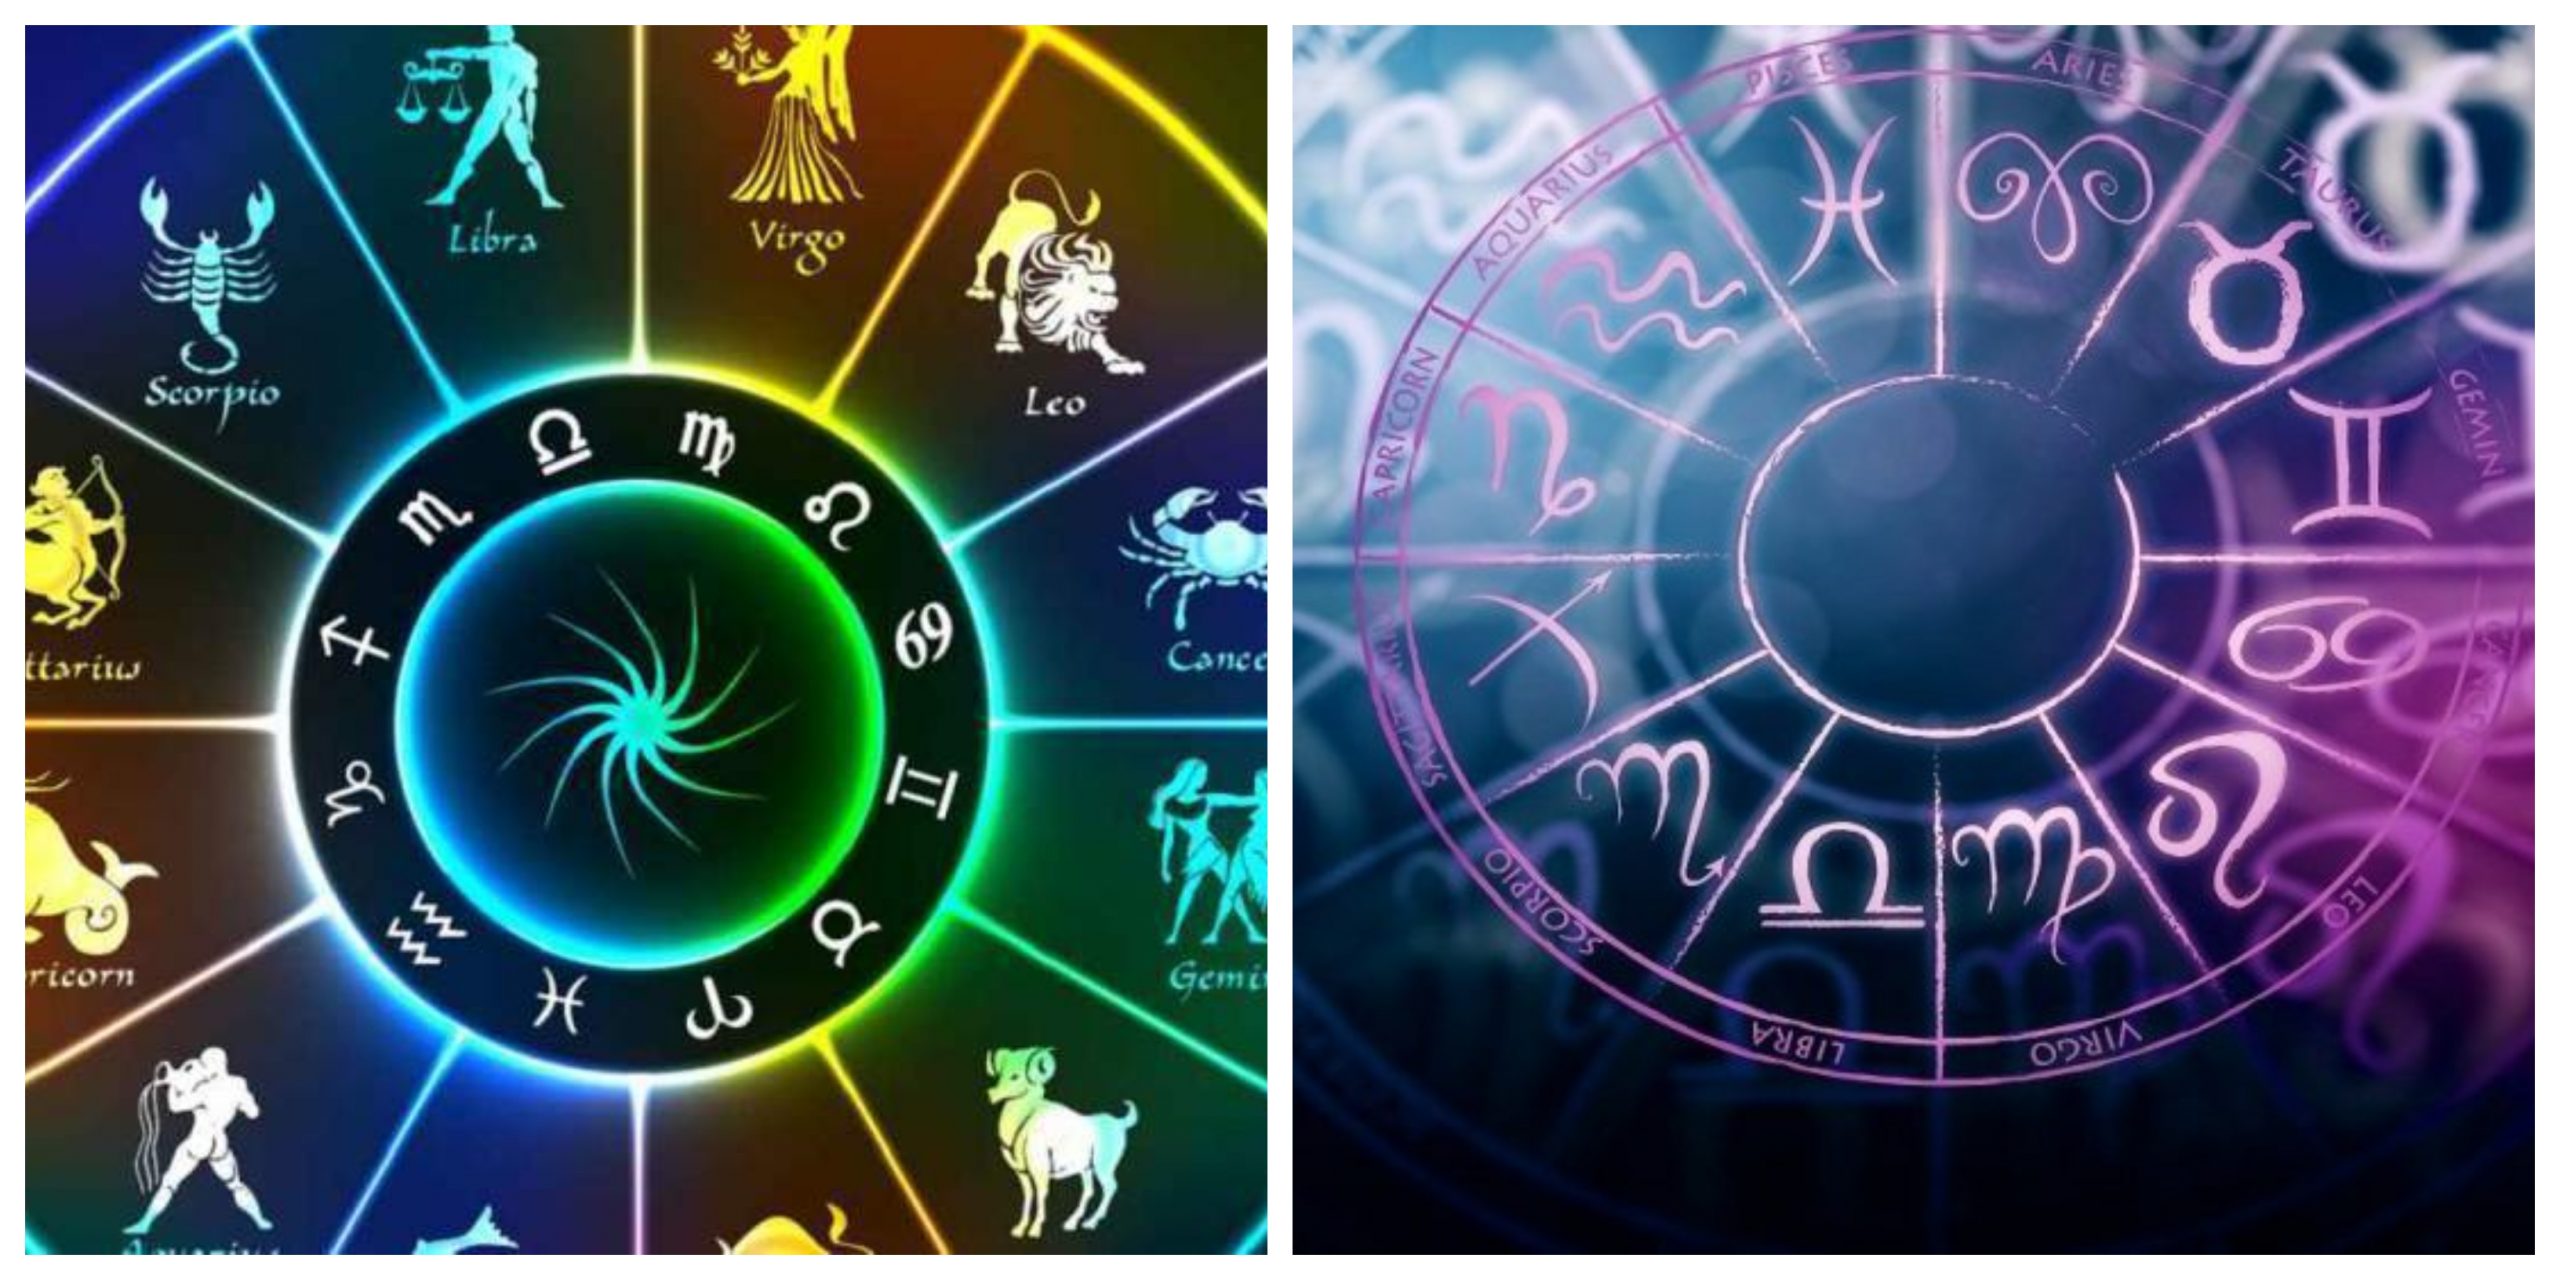 Horoscop 3 octombrie 2020. Ce surprize au astrele pentru noi